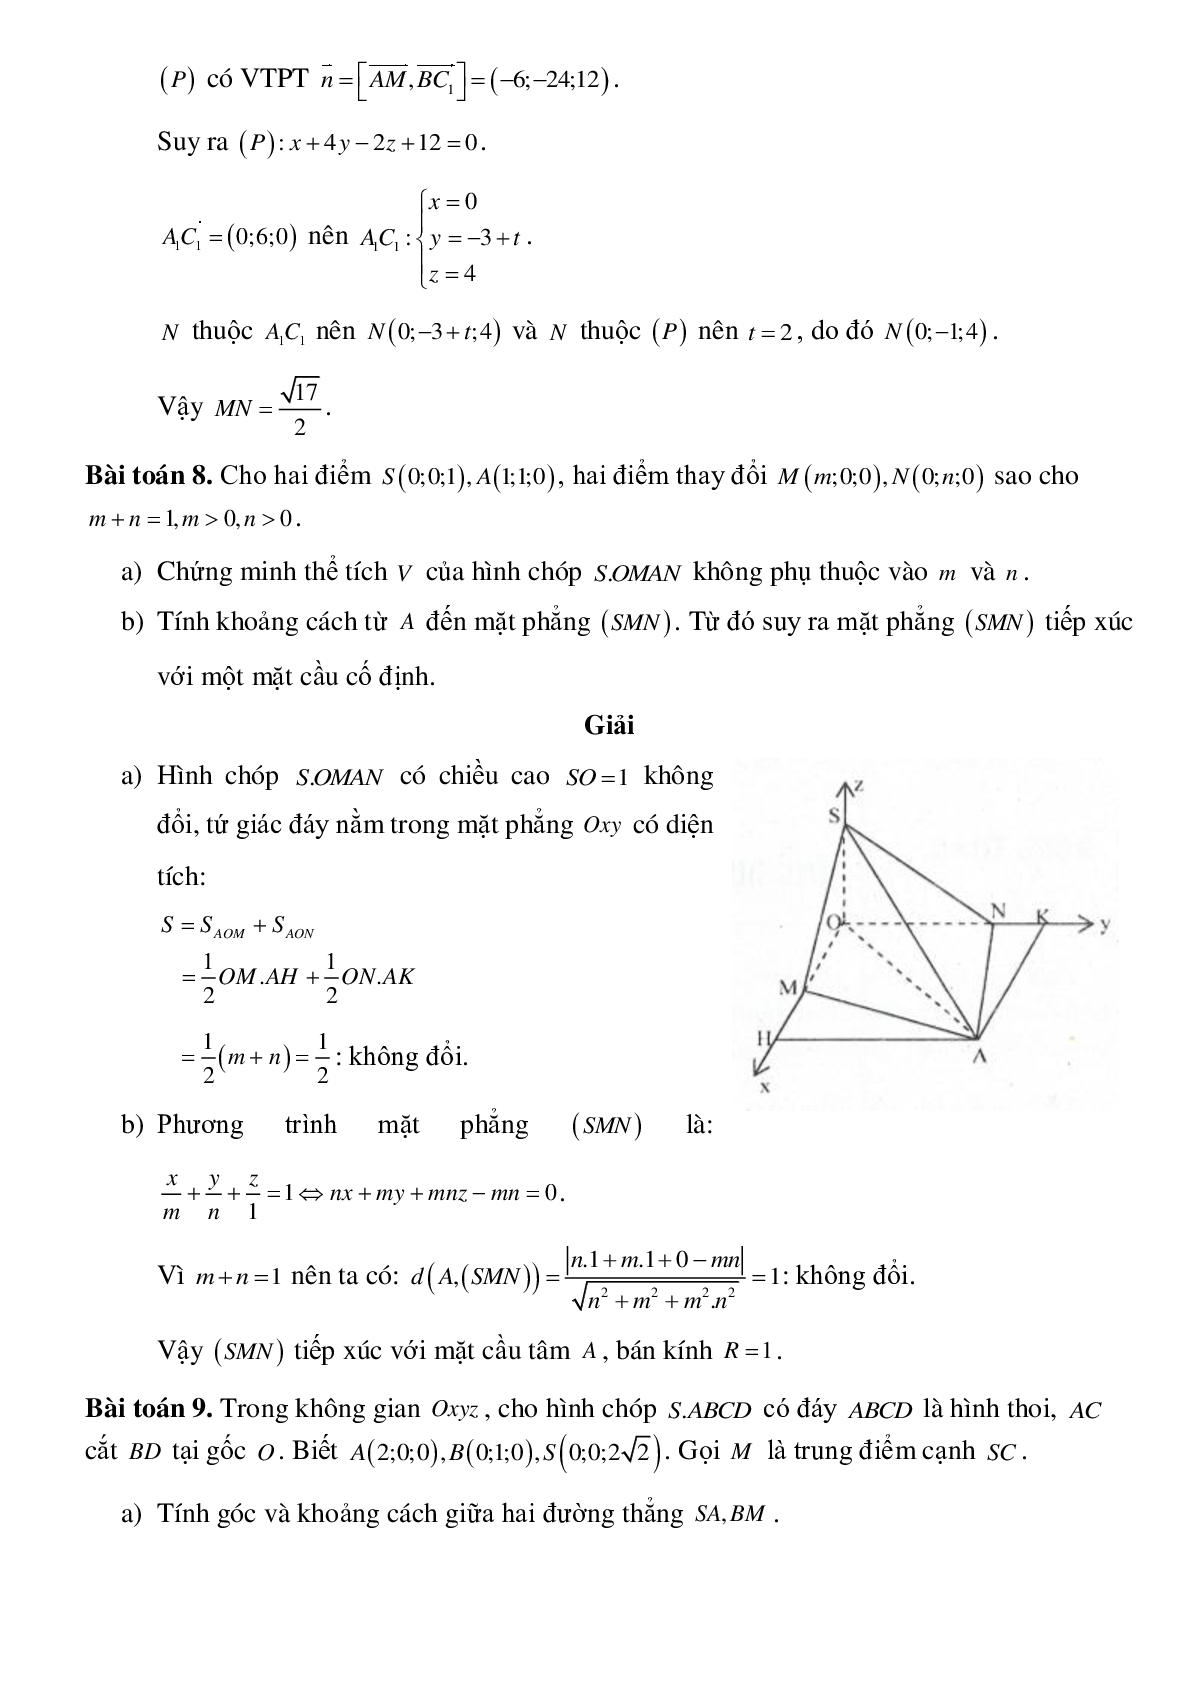 Ứng dụng phương pháp tọa độ trong các hình không gian (trang 7)